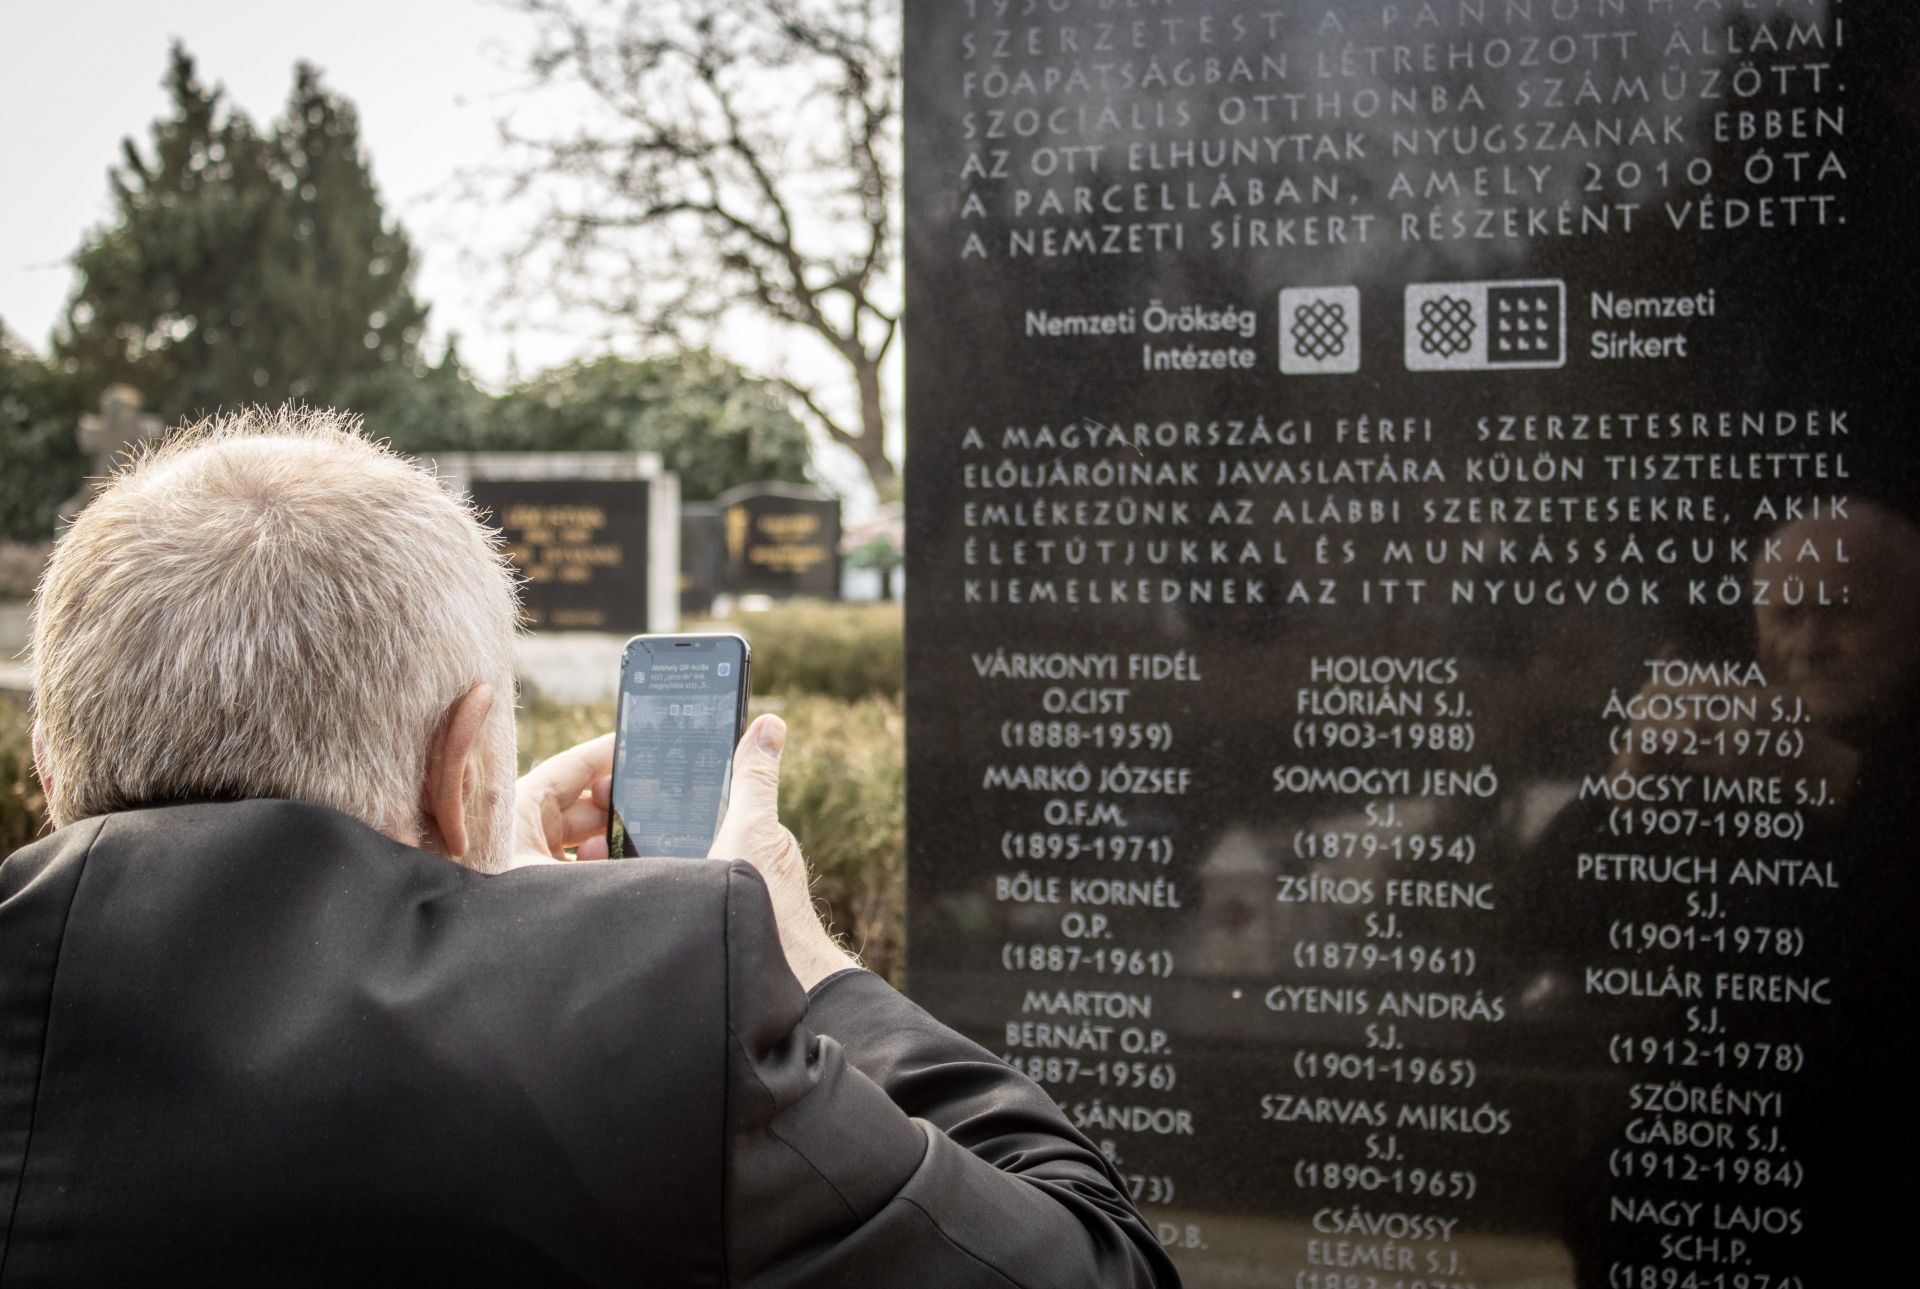 Parcellakövet és emléktáblát avattunk Pannonhalmán a Kommunista diktatúrák áldozatainak emléknapján